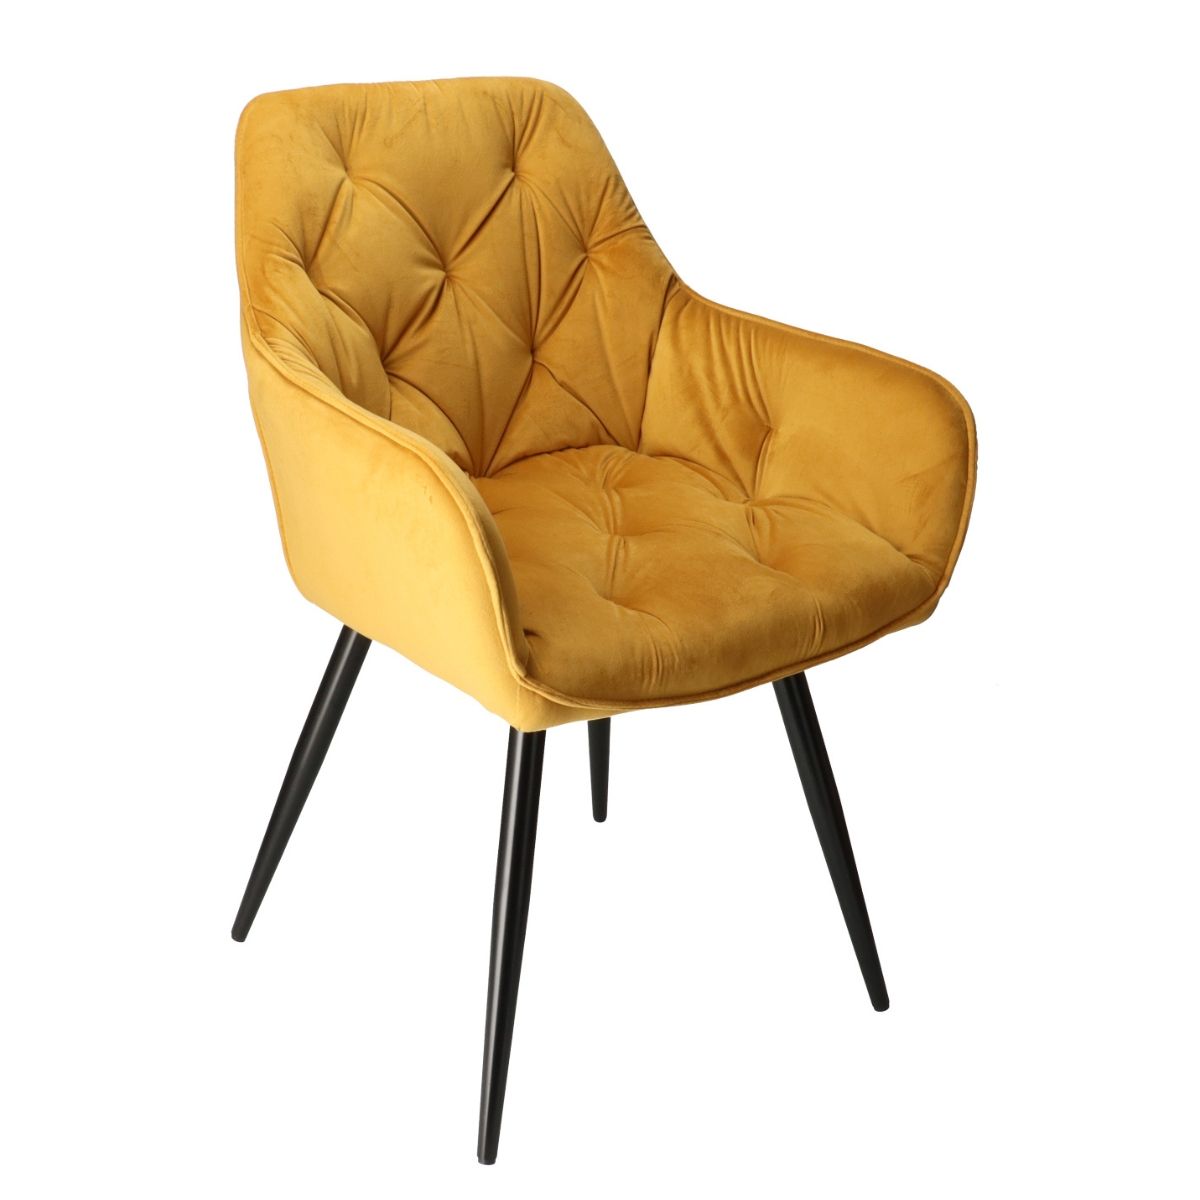 DL CHERRY Sárga design, elegáns Kárpitos beltéri szék